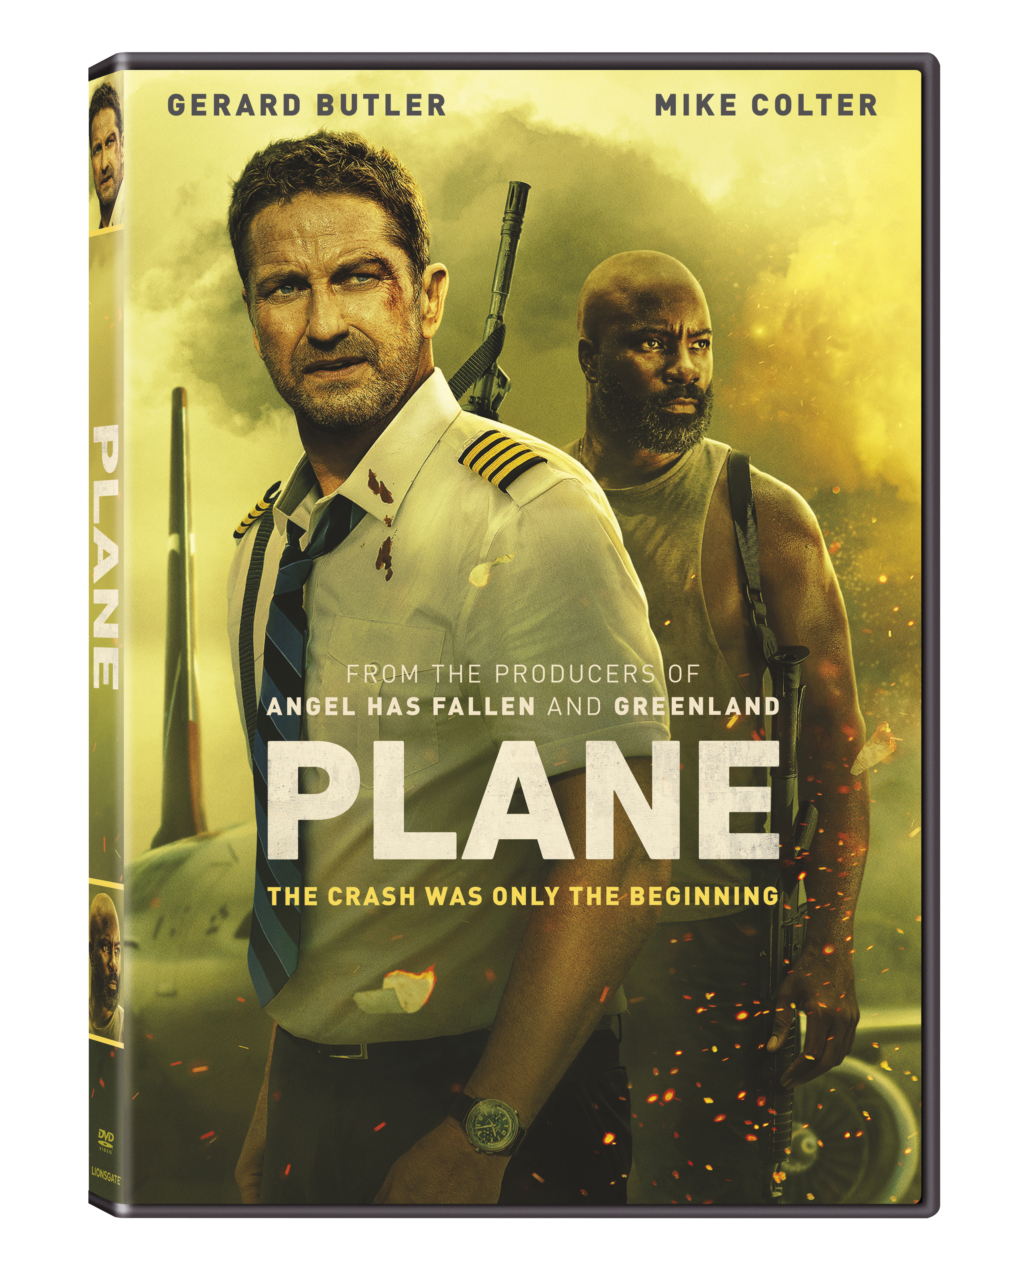 Plane DVD cover (Lionsgate)